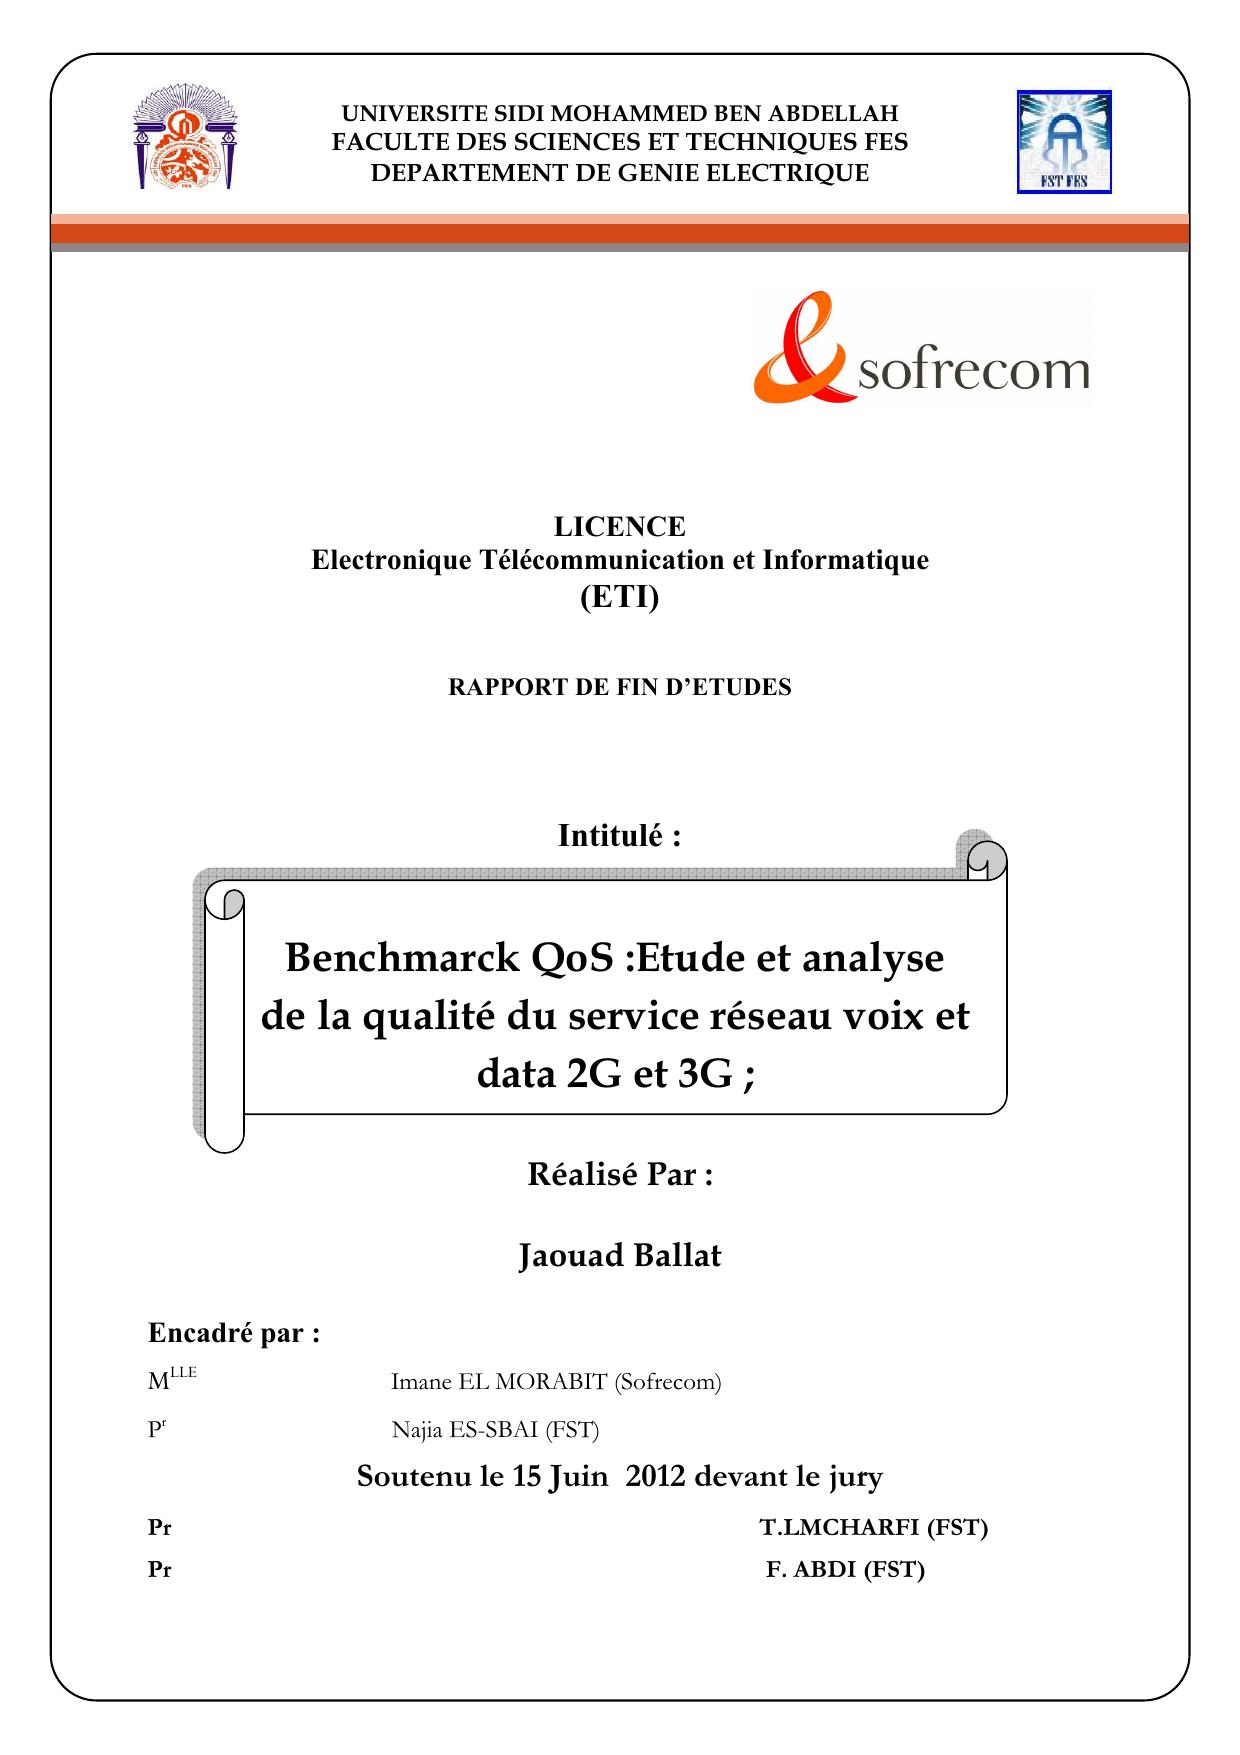 Benchmarck QoS :Etude et analyse de la qualité du service réseau voix et data 2G et 3G